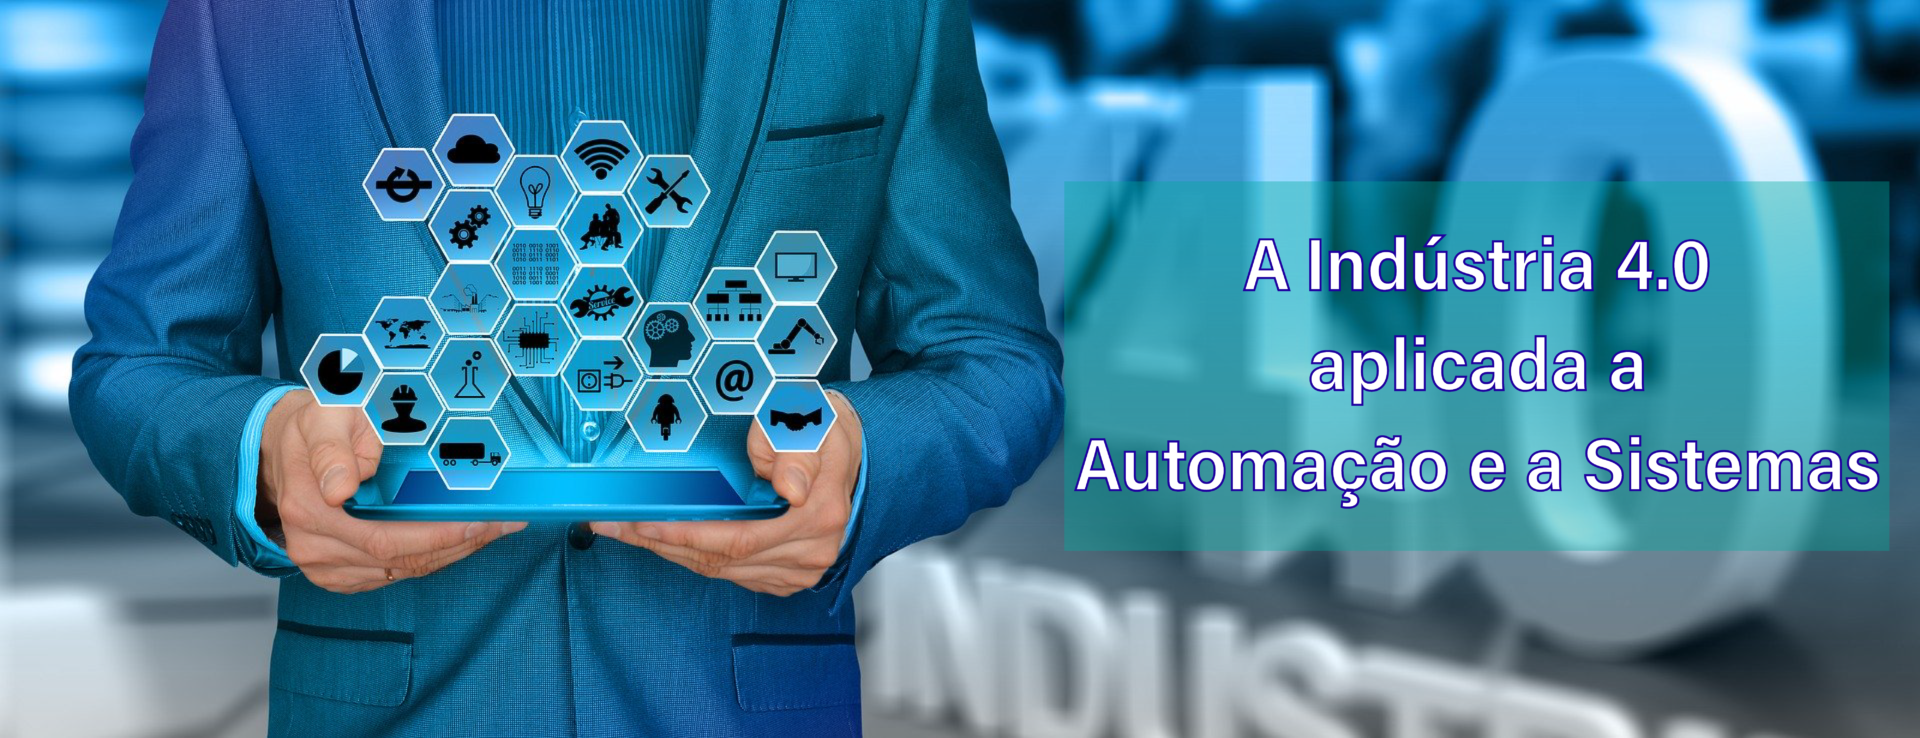 A Indústria 4.0 aplicada a automação e a sistemas